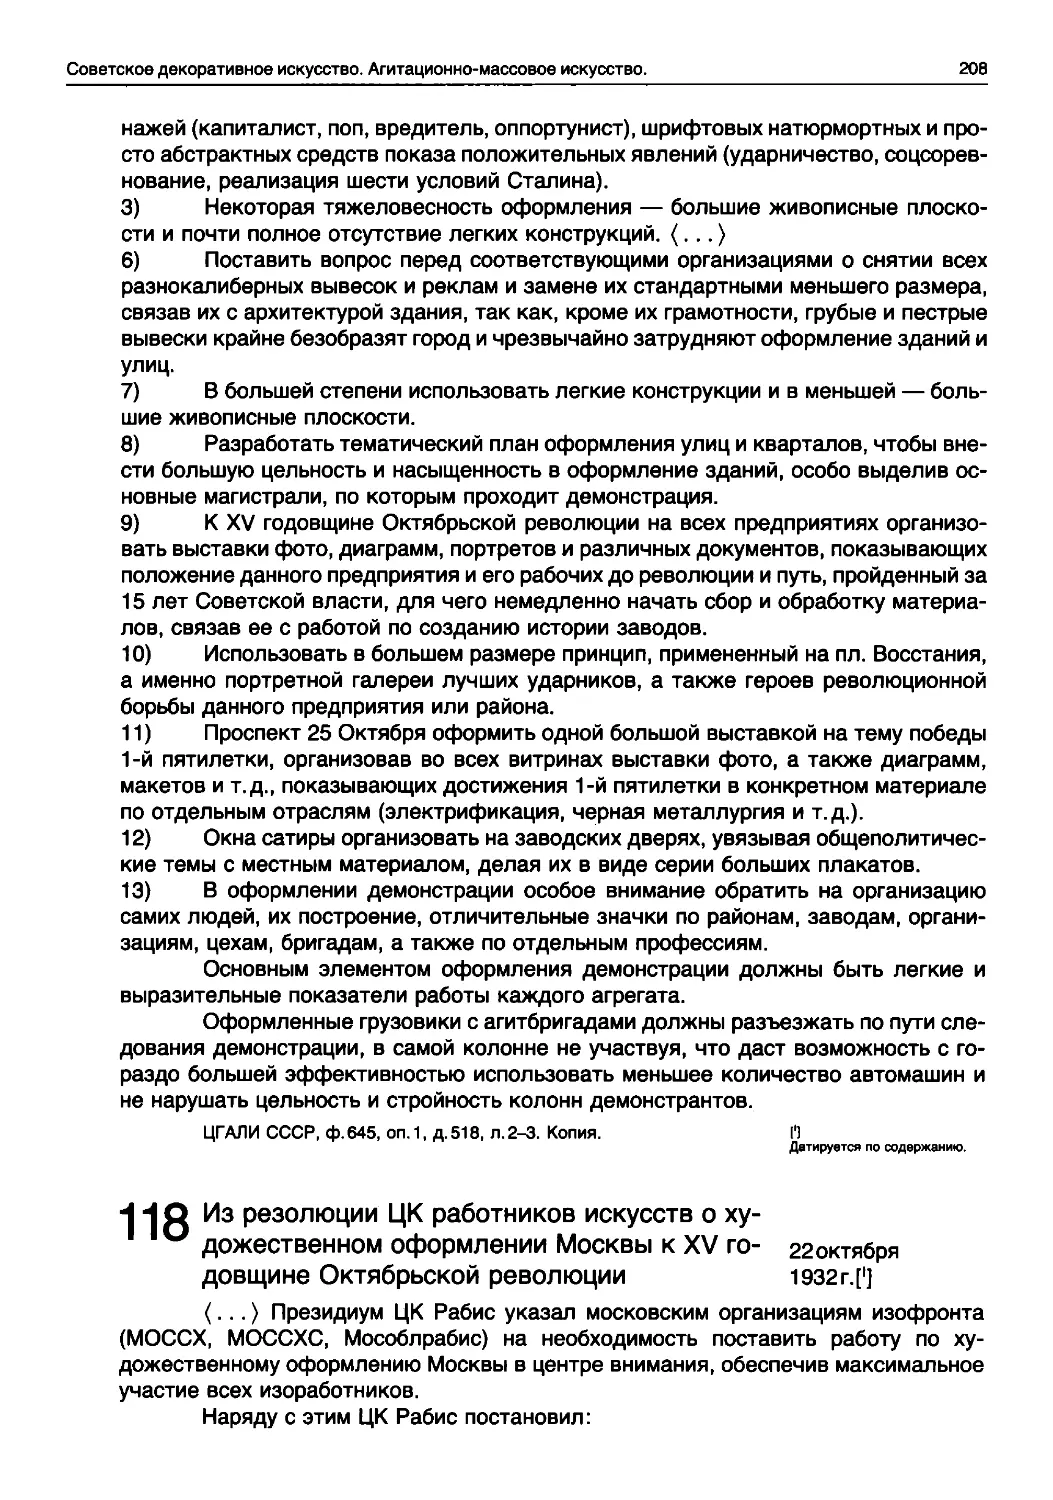 11P Из резолюции ЦК работников искусств о ху-
1 1 и дожественном оформлении Москвы к XV годовщине Октябрьской революции